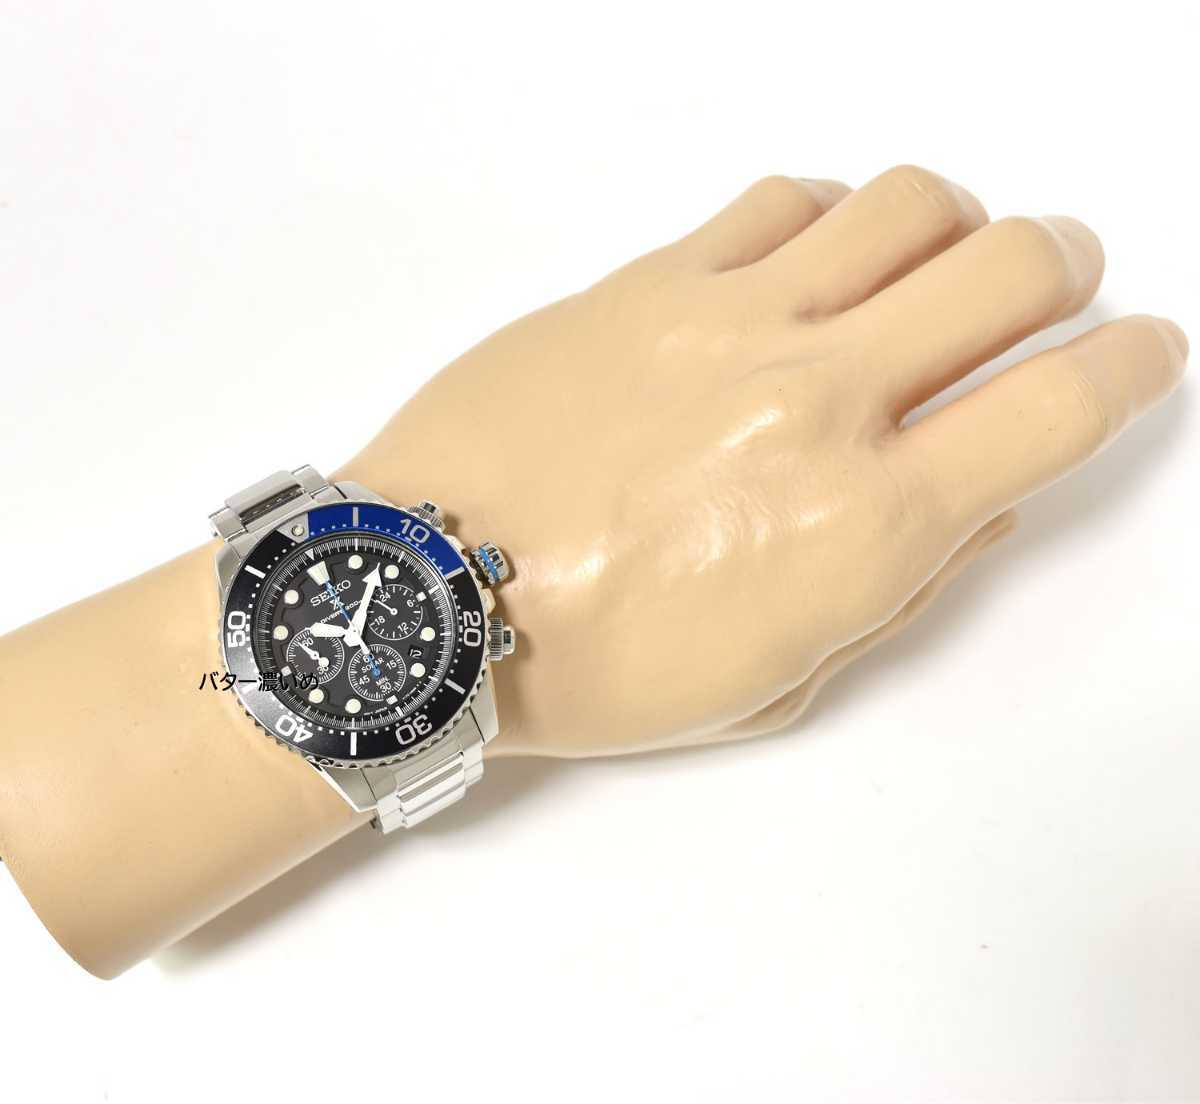 美品 セイコー SEIKO メンズ腕時計 プロスペックス ソーラー クロノグラフ クオーツ 200m防水 ダイバーズ SSC017P1  箱あり